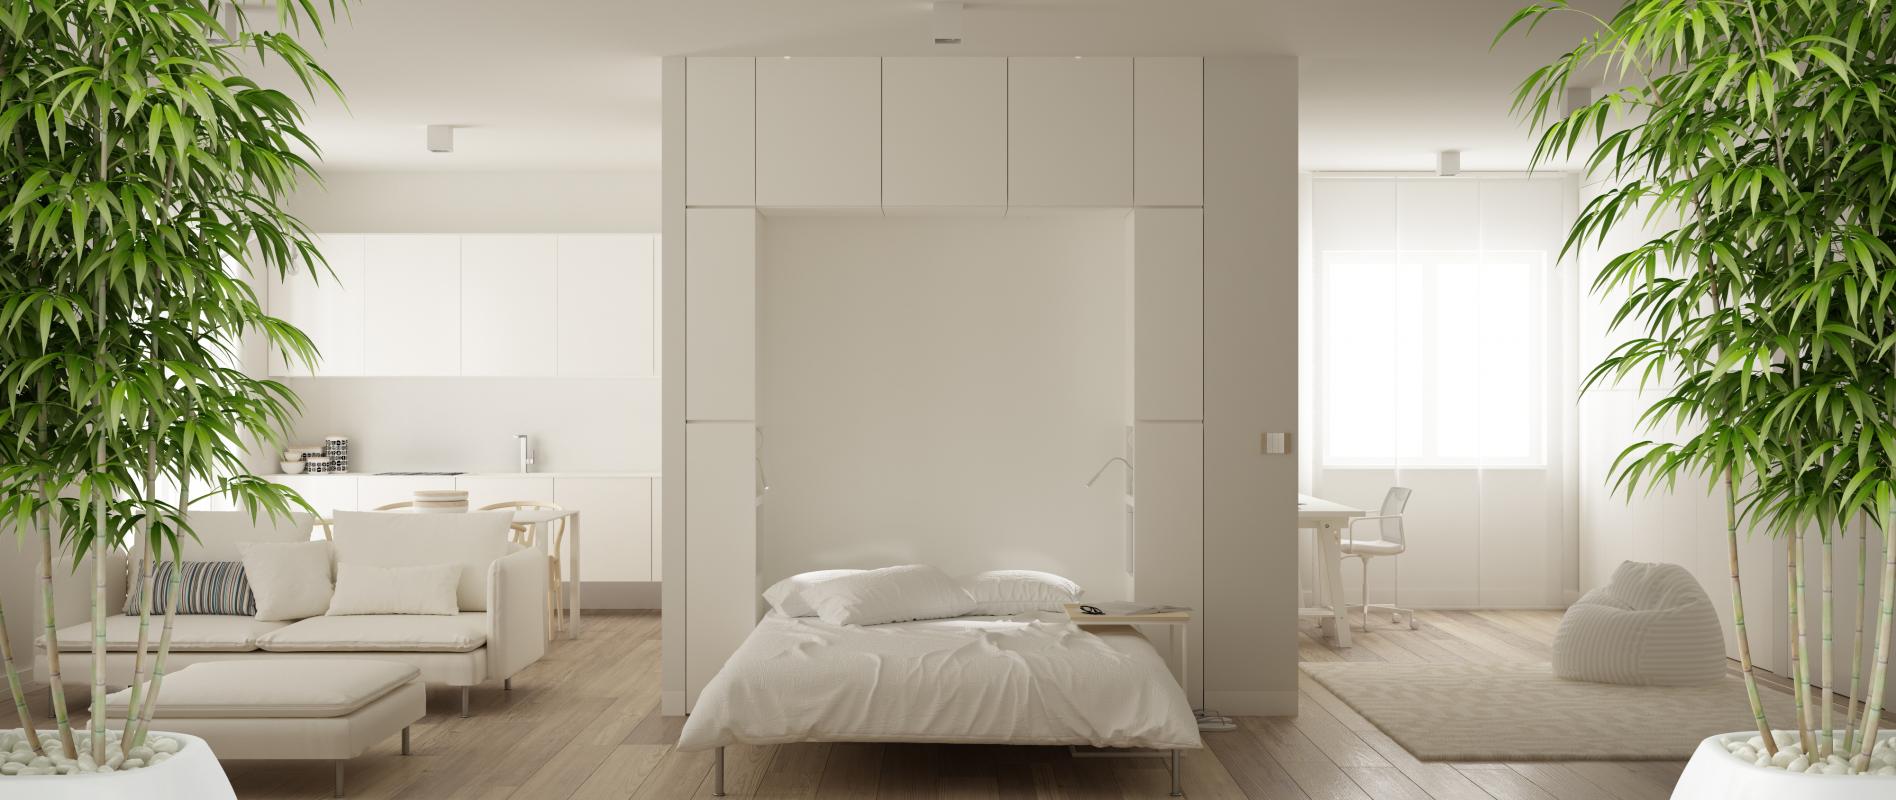 Vente Appartement neuf 17 m² à Marseille 4eme Arrondissement 129 540 €